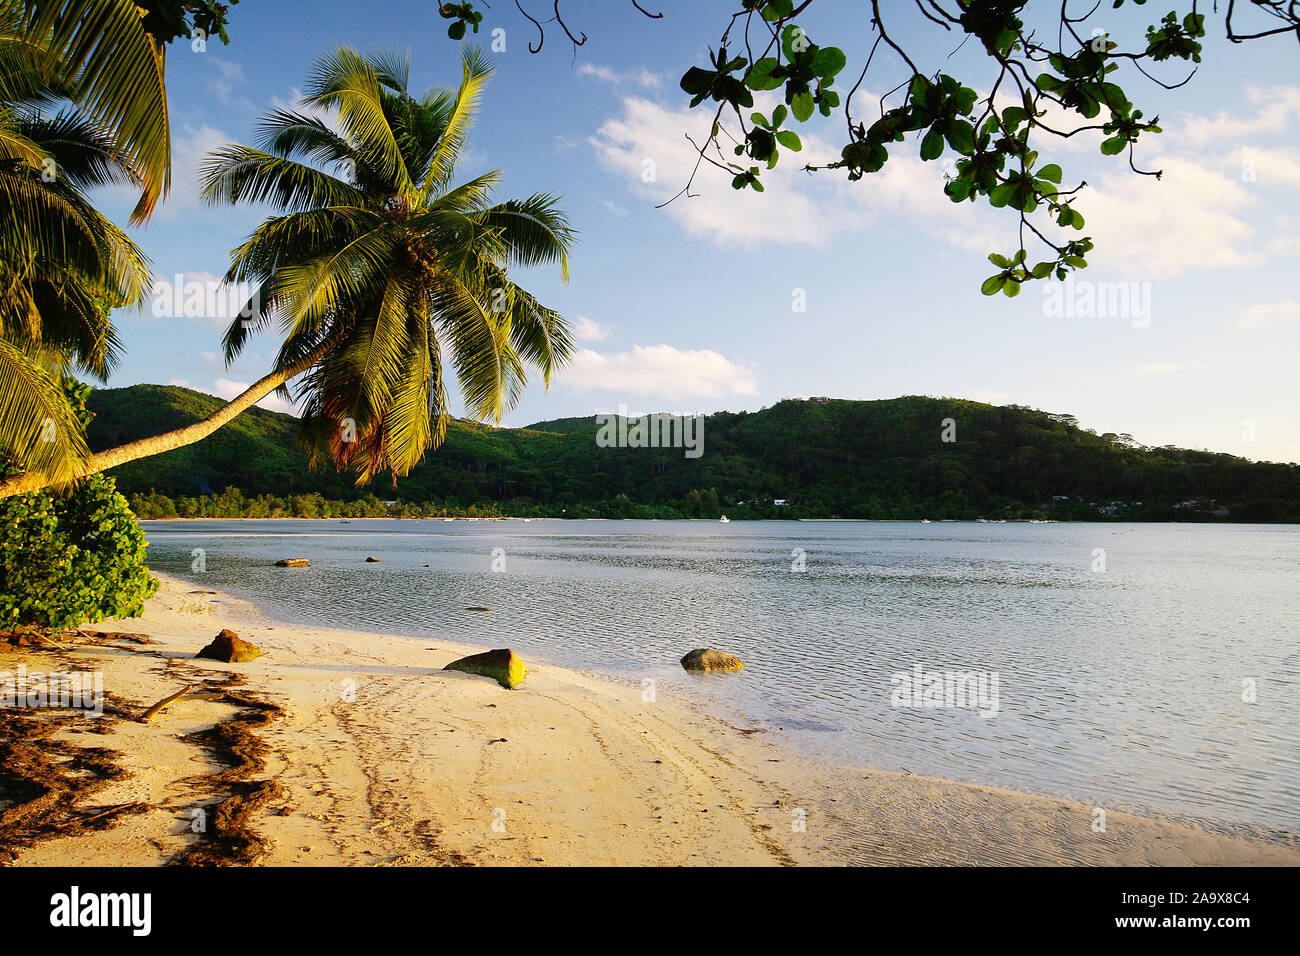 Palme Schaukel mit der Anse Gaulettes im süd westen der Insel Mahe, Seychellen Foto de stock